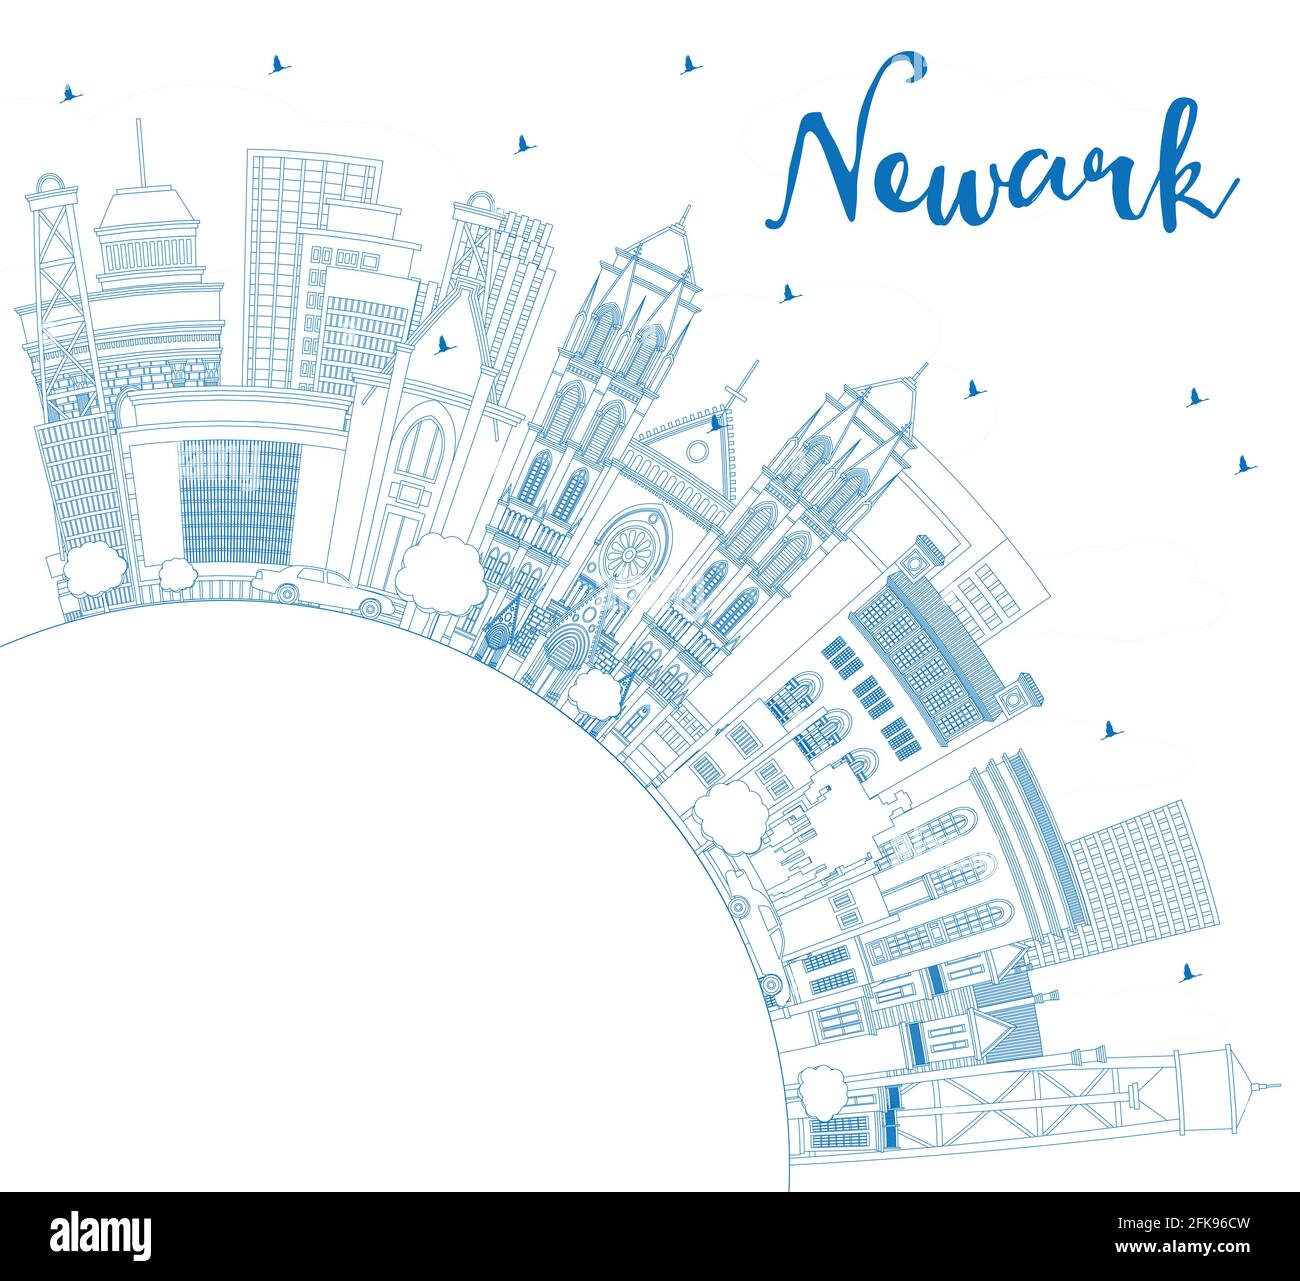 Umreißen Sie die Skyline von Newark New Jersey City mit blauen Gebäuden und Kopierfläche. Stock Vektor